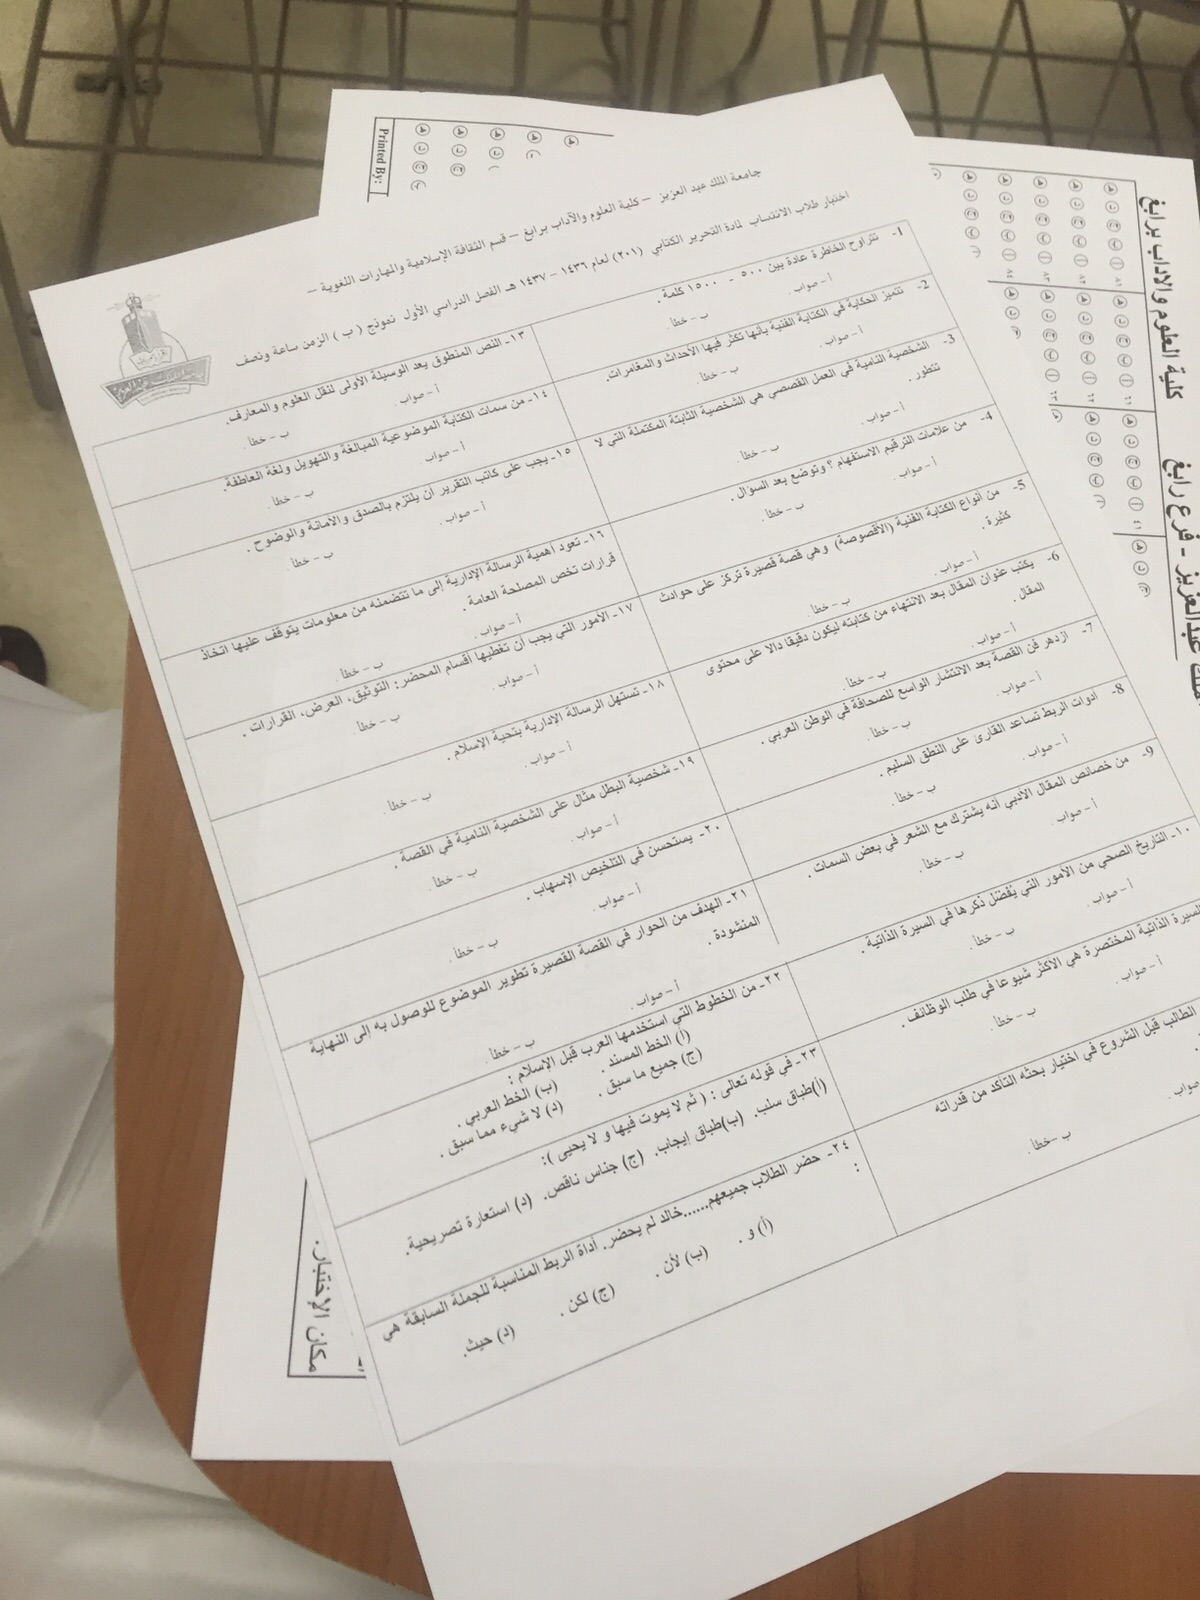 اسئلة اختبار التحرير الكتابي arab 201 الفصل الأول 1437هـ نموذج ب